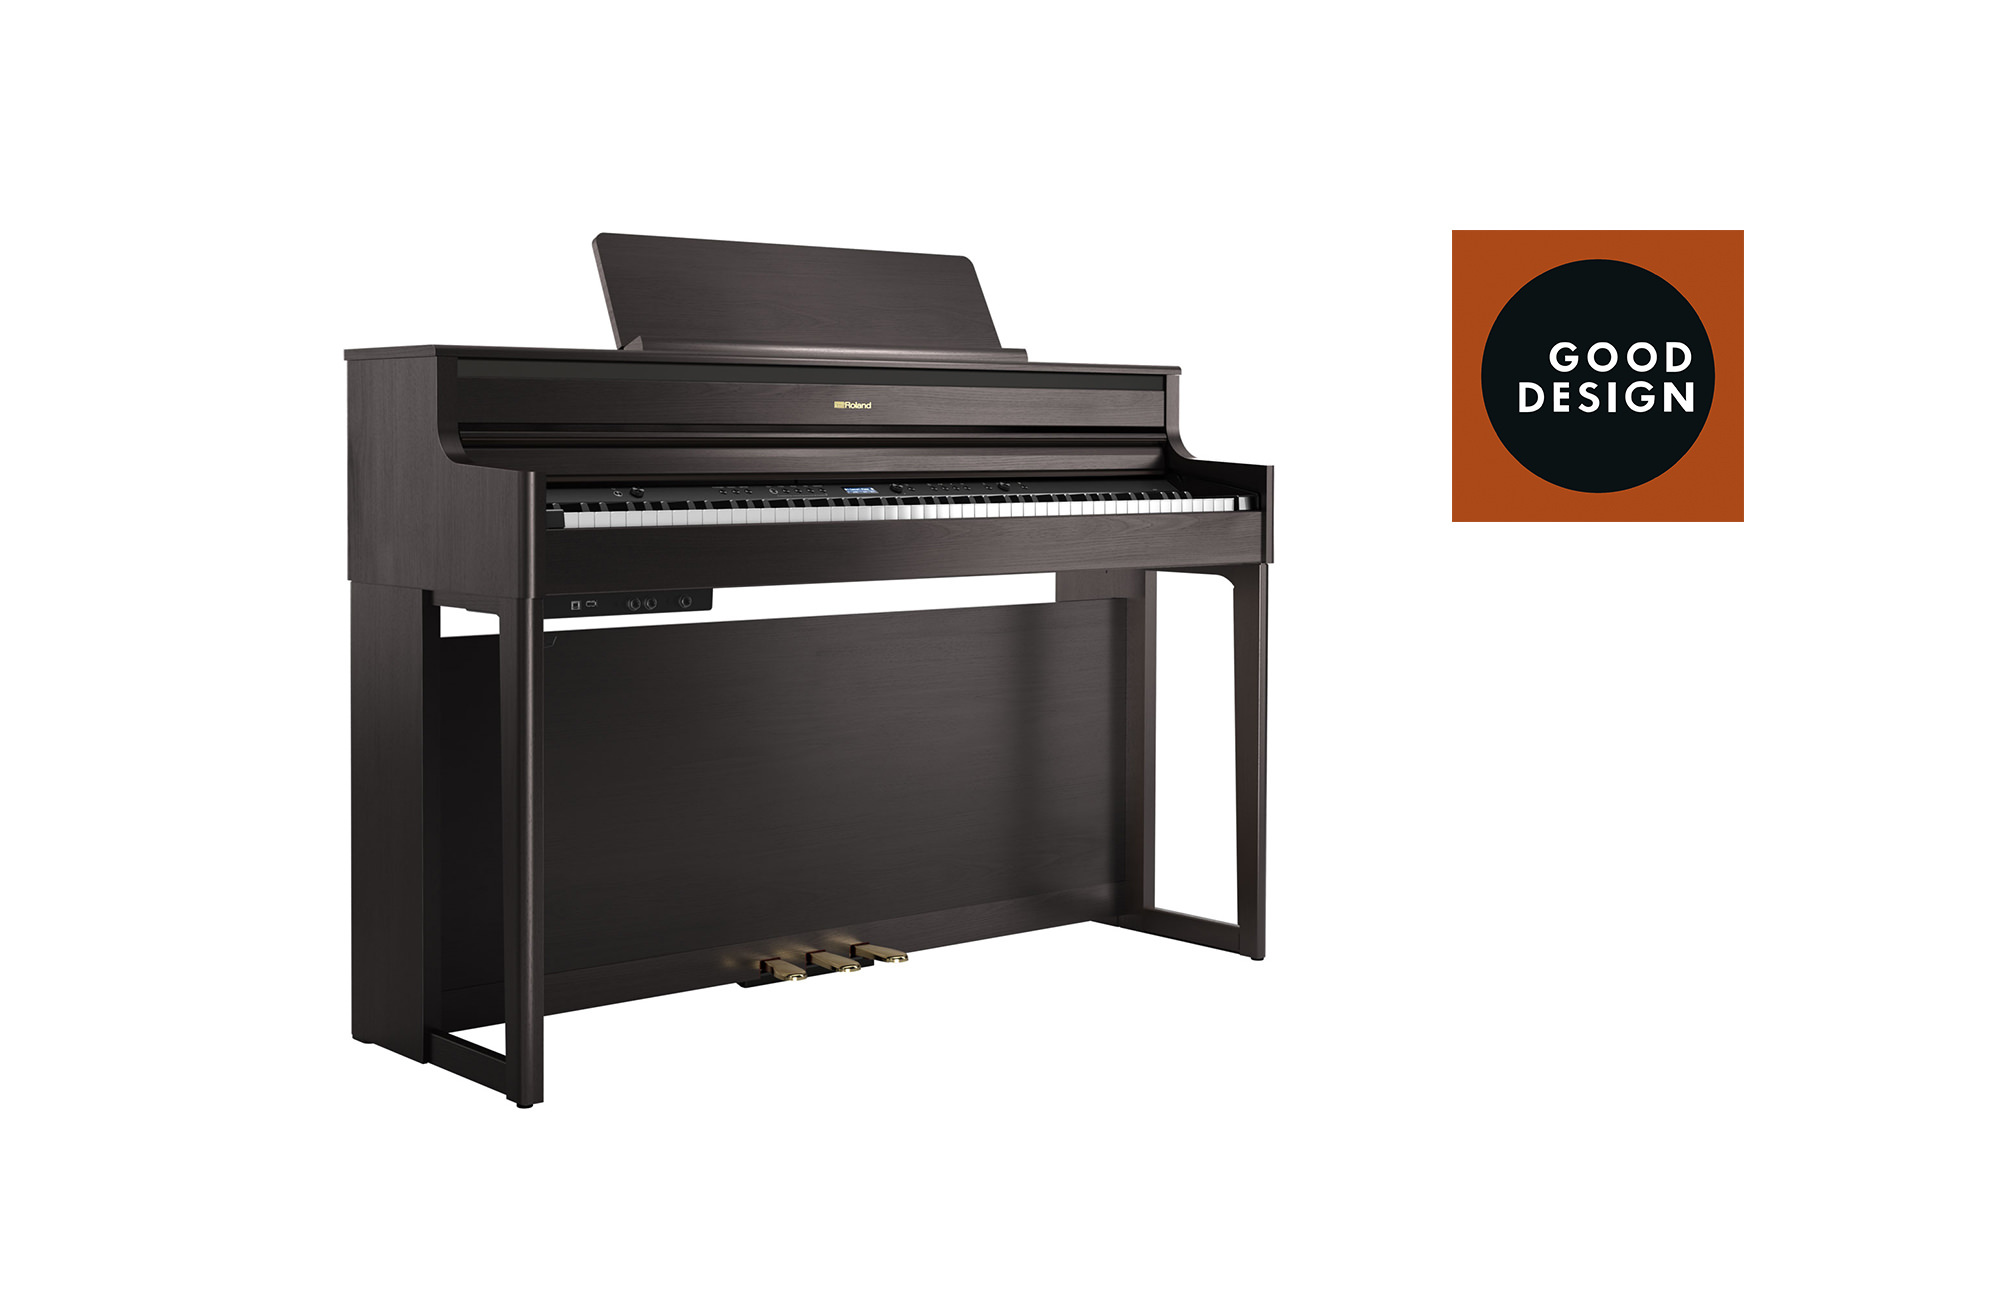 ピアノとしての性能とデザインにこだわったデジタルピアノ
『HP704』が「シカゴ・グッドデザイン賞 2019」を受賞